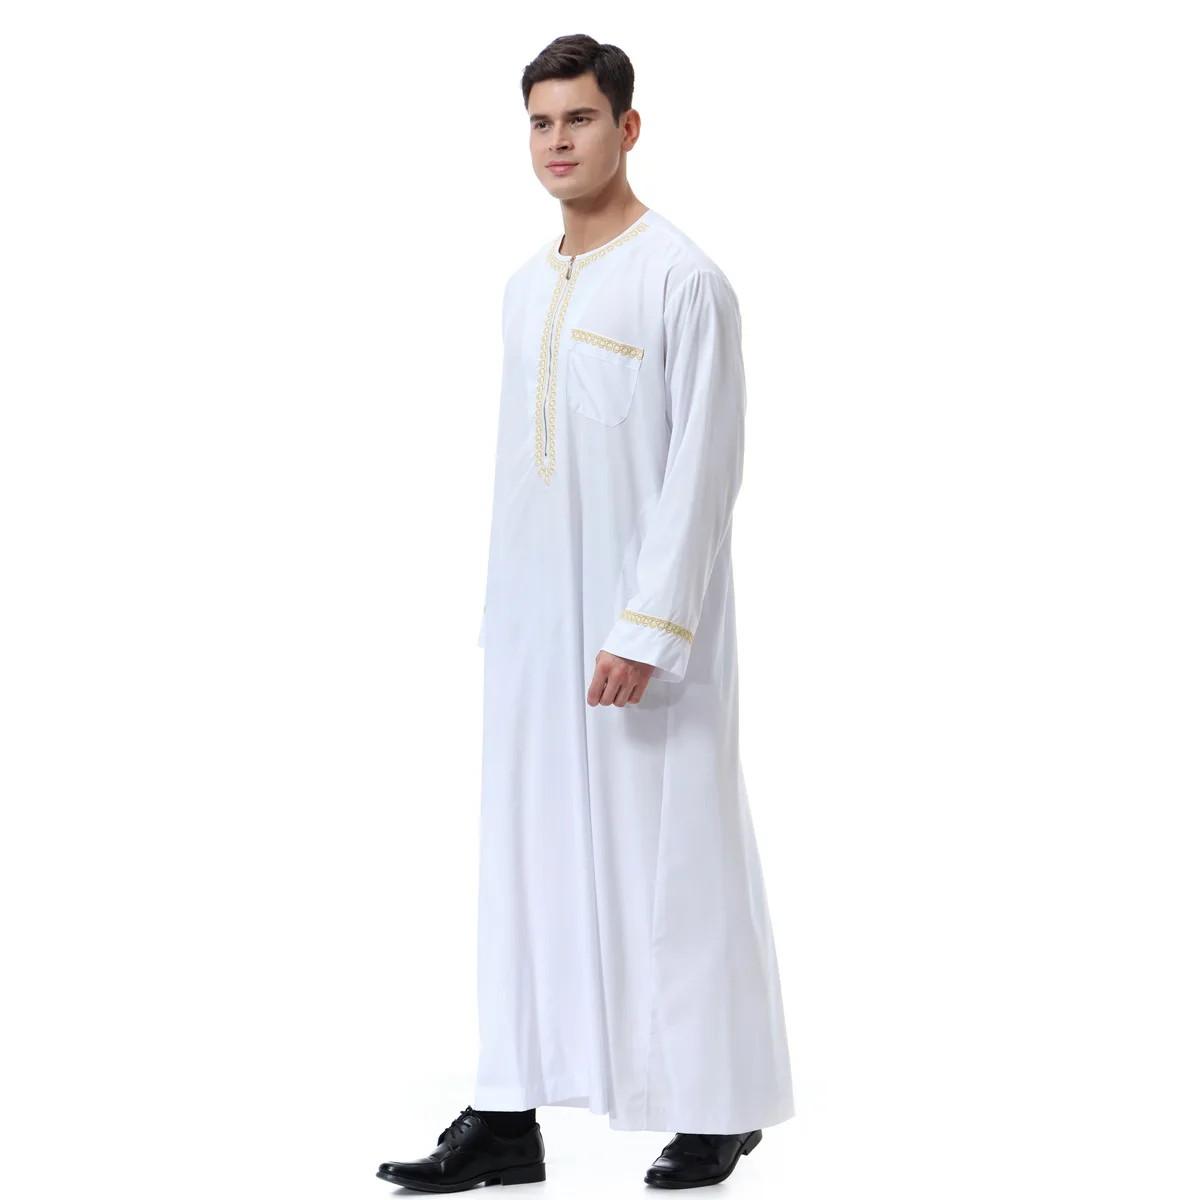 Musulmans vêtements Messieurs saoudien arabe manches courtes Thobe Islamic Jubba Caftan 